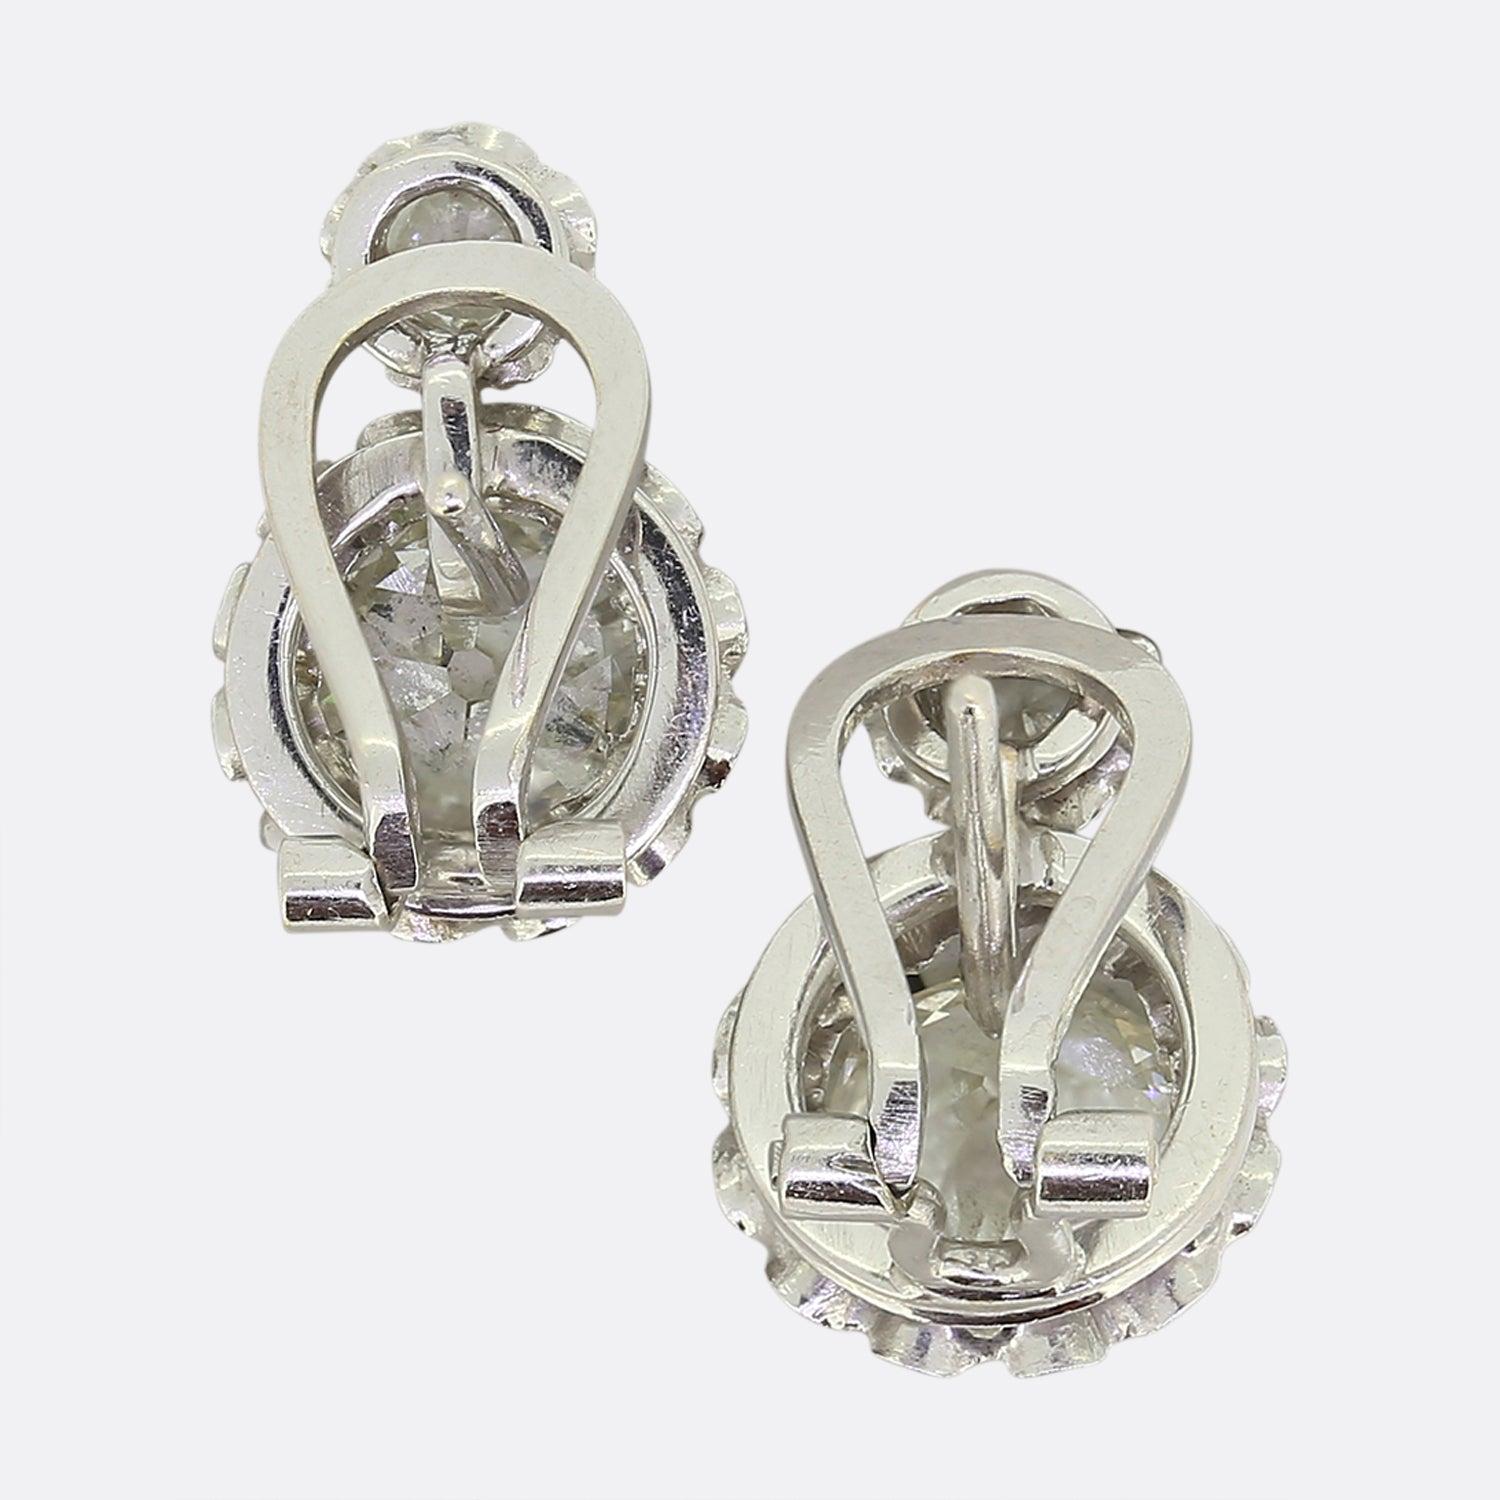 Dies ist ein wunderschönes Paar Diamantohrringe aus den 1950er Jahren. Jeder Ohrring besteht aus einem kleinen und einem großen Diamanten im Altschliff, die in Platin gefasst sind, um sie noch größer erscheinen zu lassen. Die Diamanten sind gut